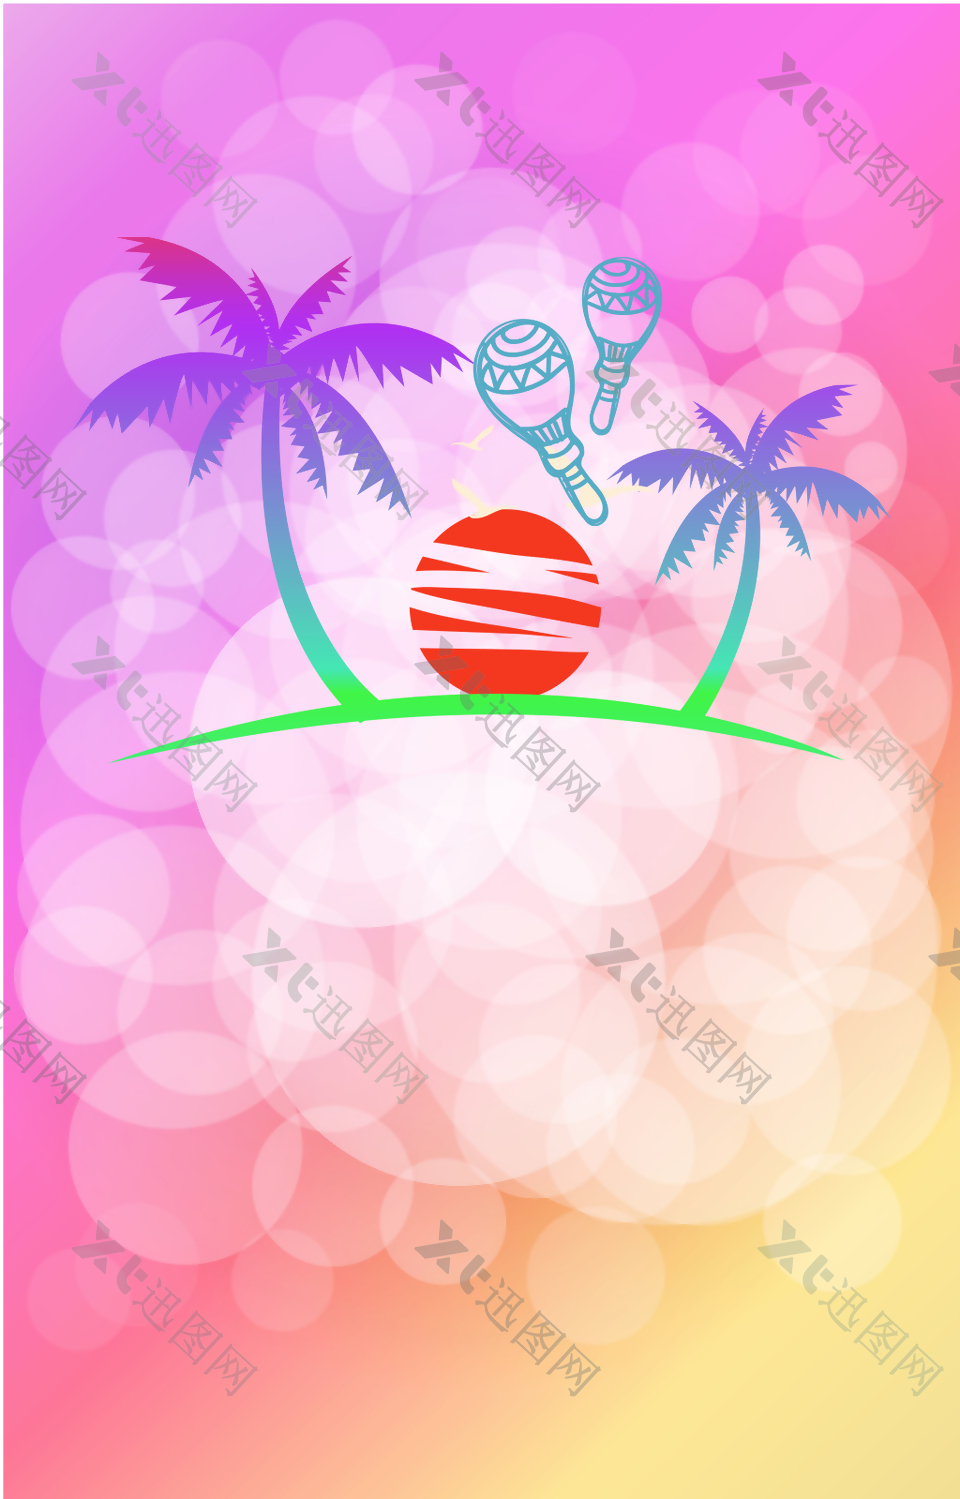 光晕线条上的椰子树和球背景素材